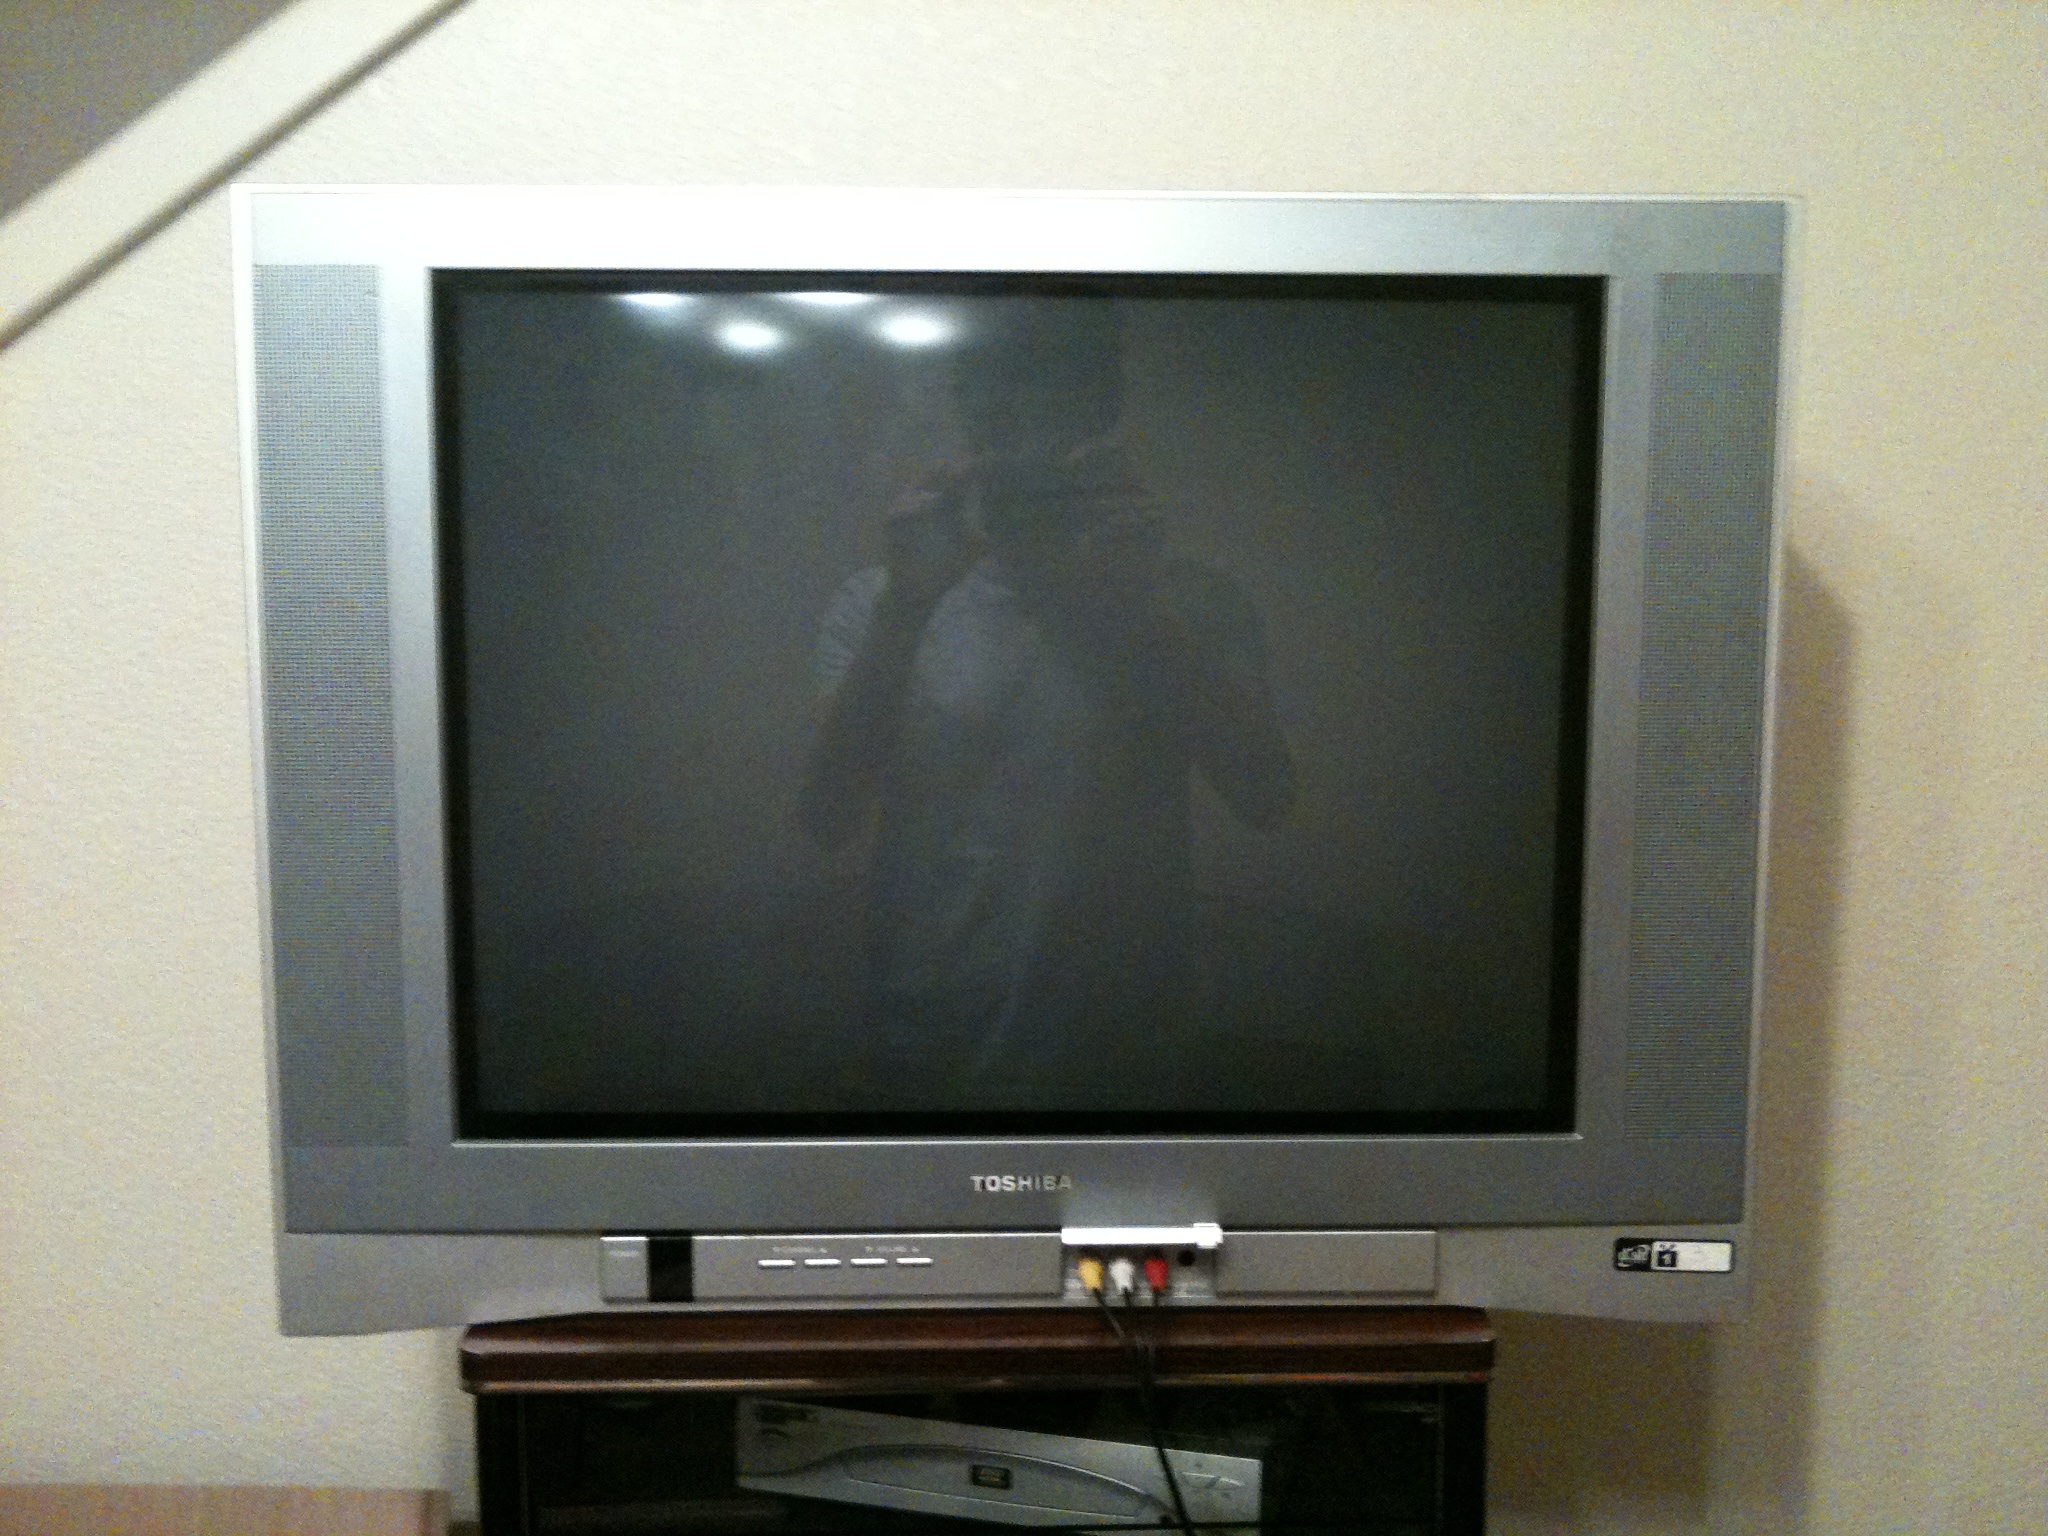 Телевизоры 2004 года. Toshiba TV 2150. Toshiba st9000 телевизор. Toshiba TV 2001. Toshiba REGZA телевизор 2004 года.